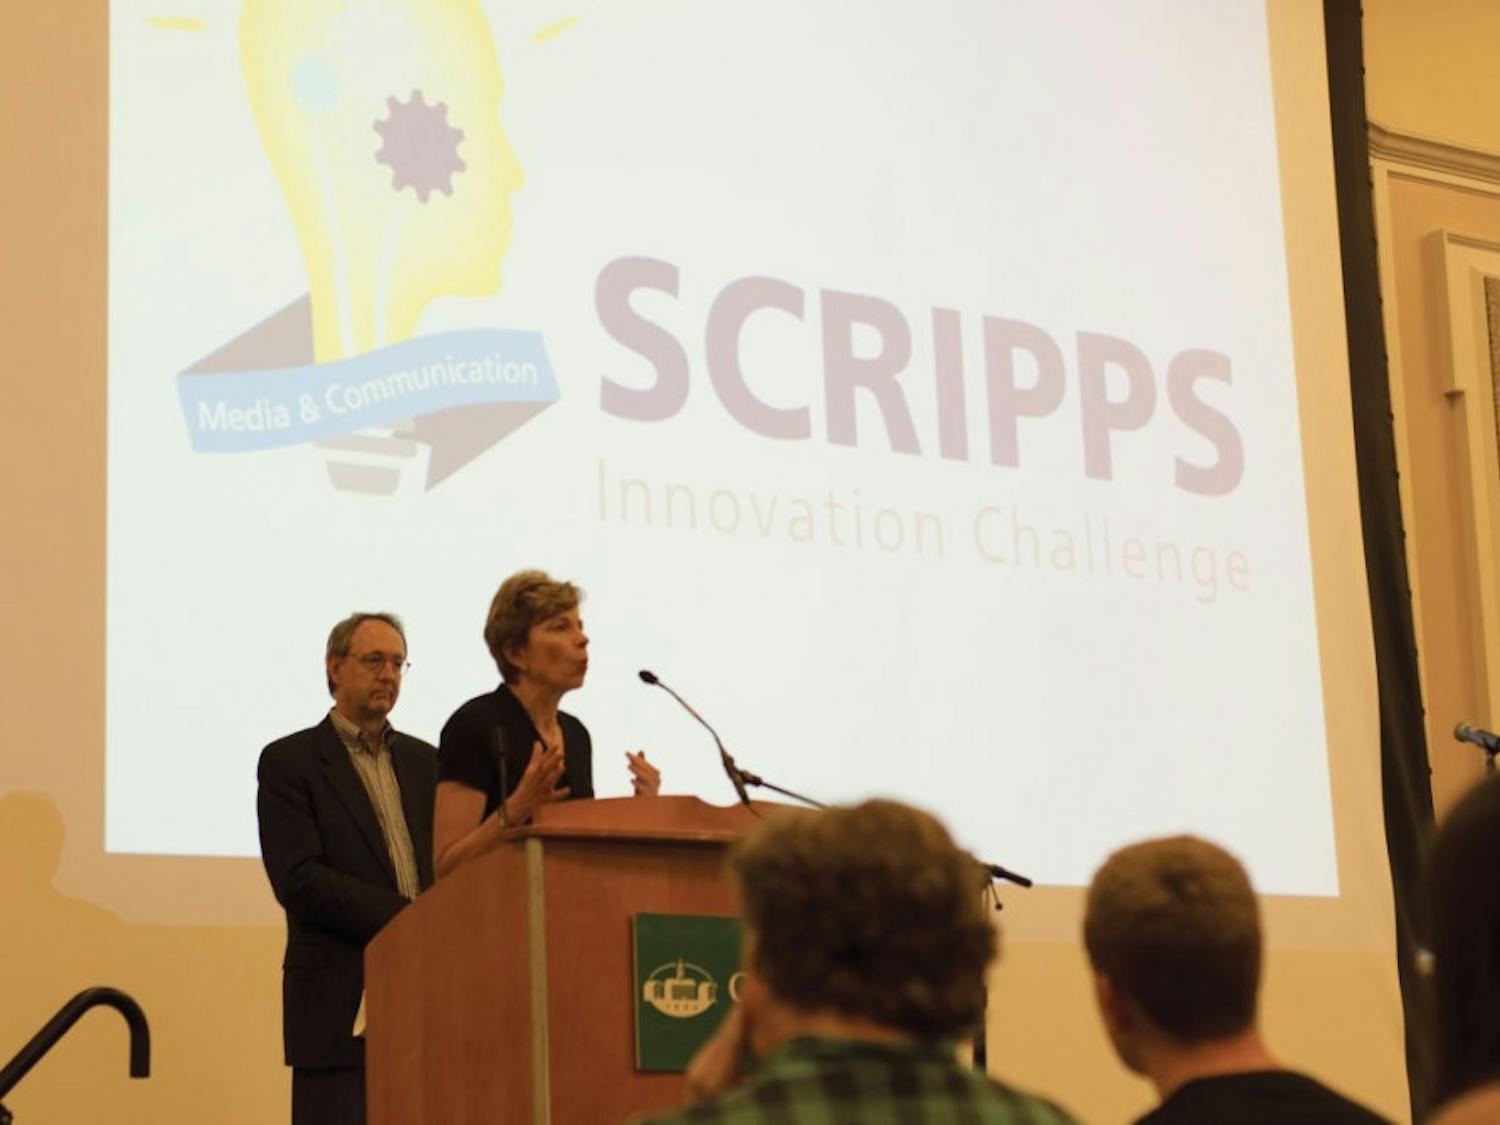 Scripps Innovation Challenge  